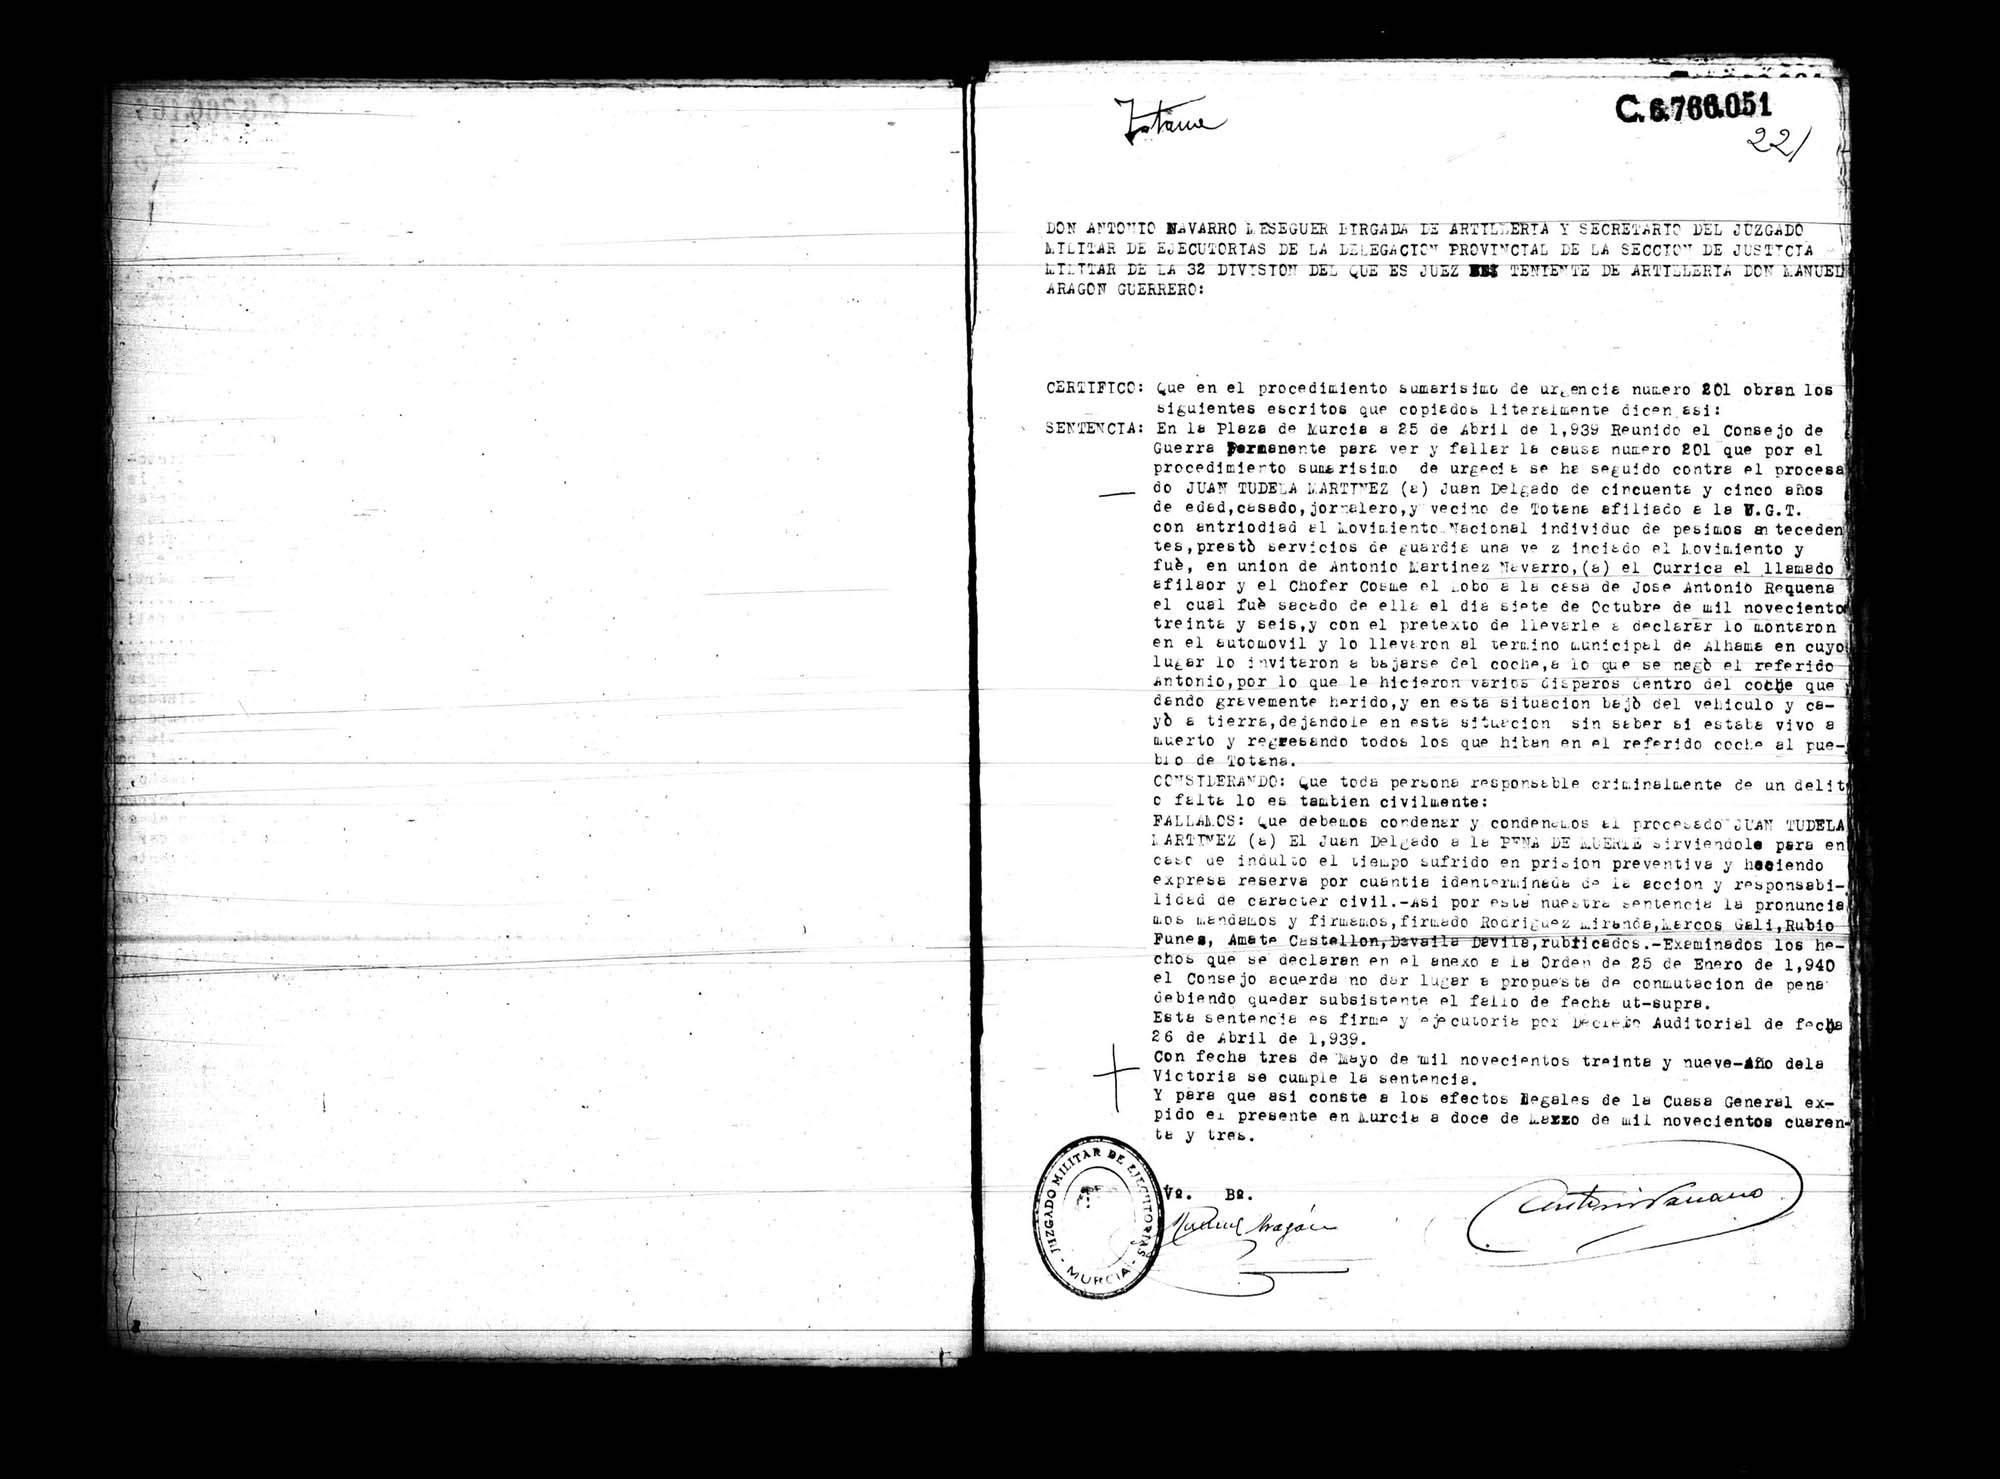 Certificado de la sentencia pronunciada contra Juan Tudela Martínez, causa 201, el 25 de abril de 1939 en Murcia.